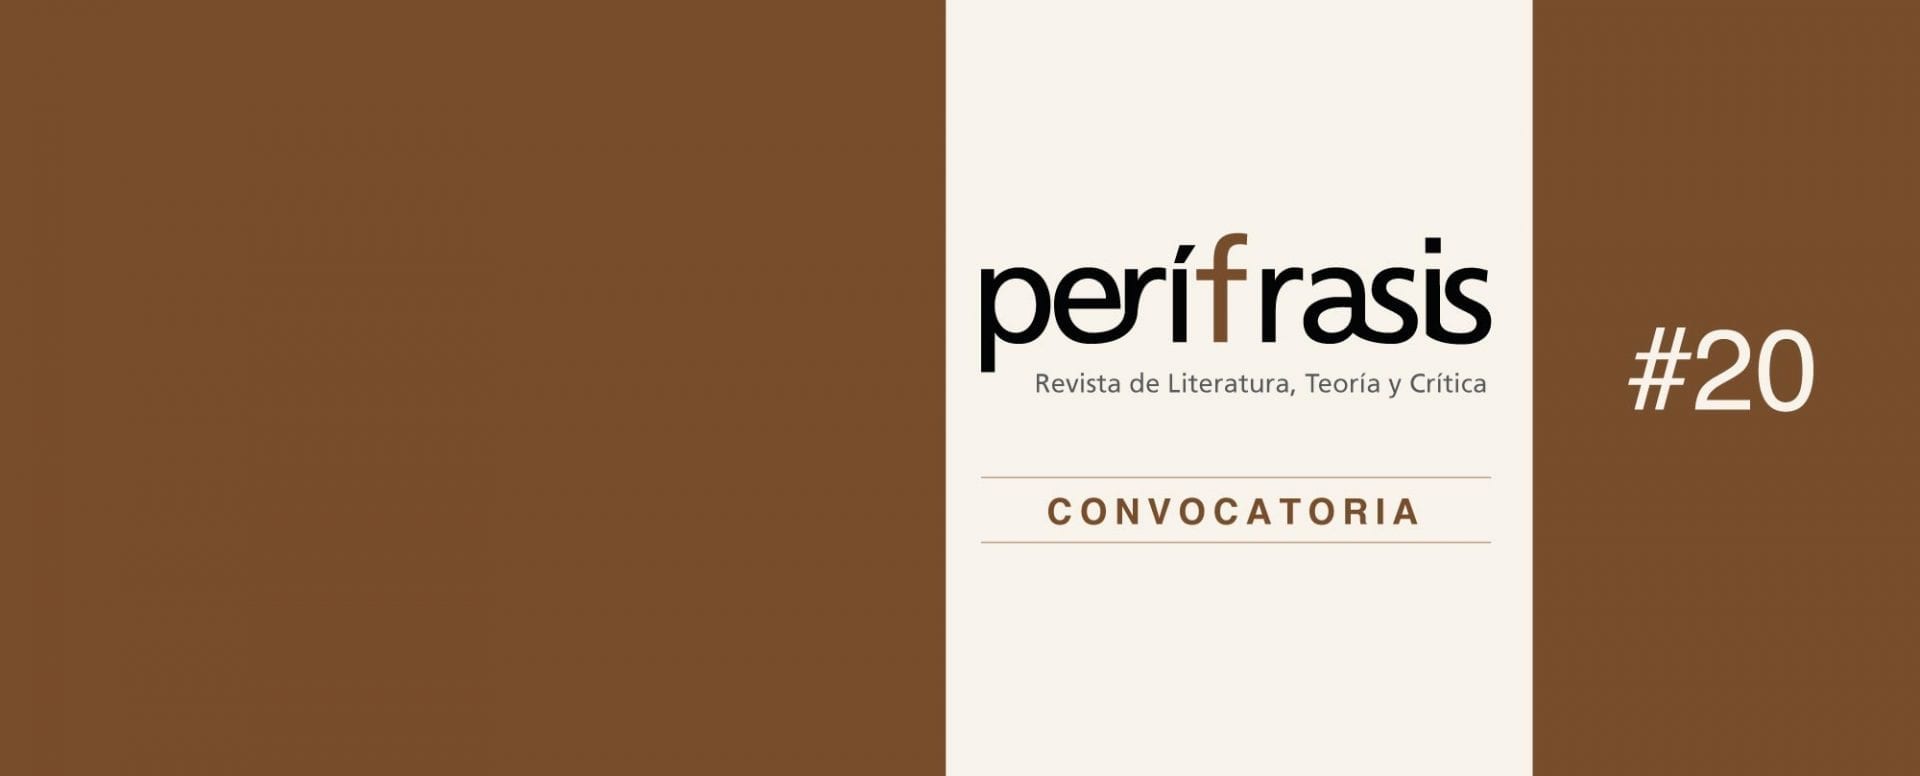 La revista Perífrasis, de Humanidades y Literatura recibirá artículos hasta el 28 de enero de 2019.